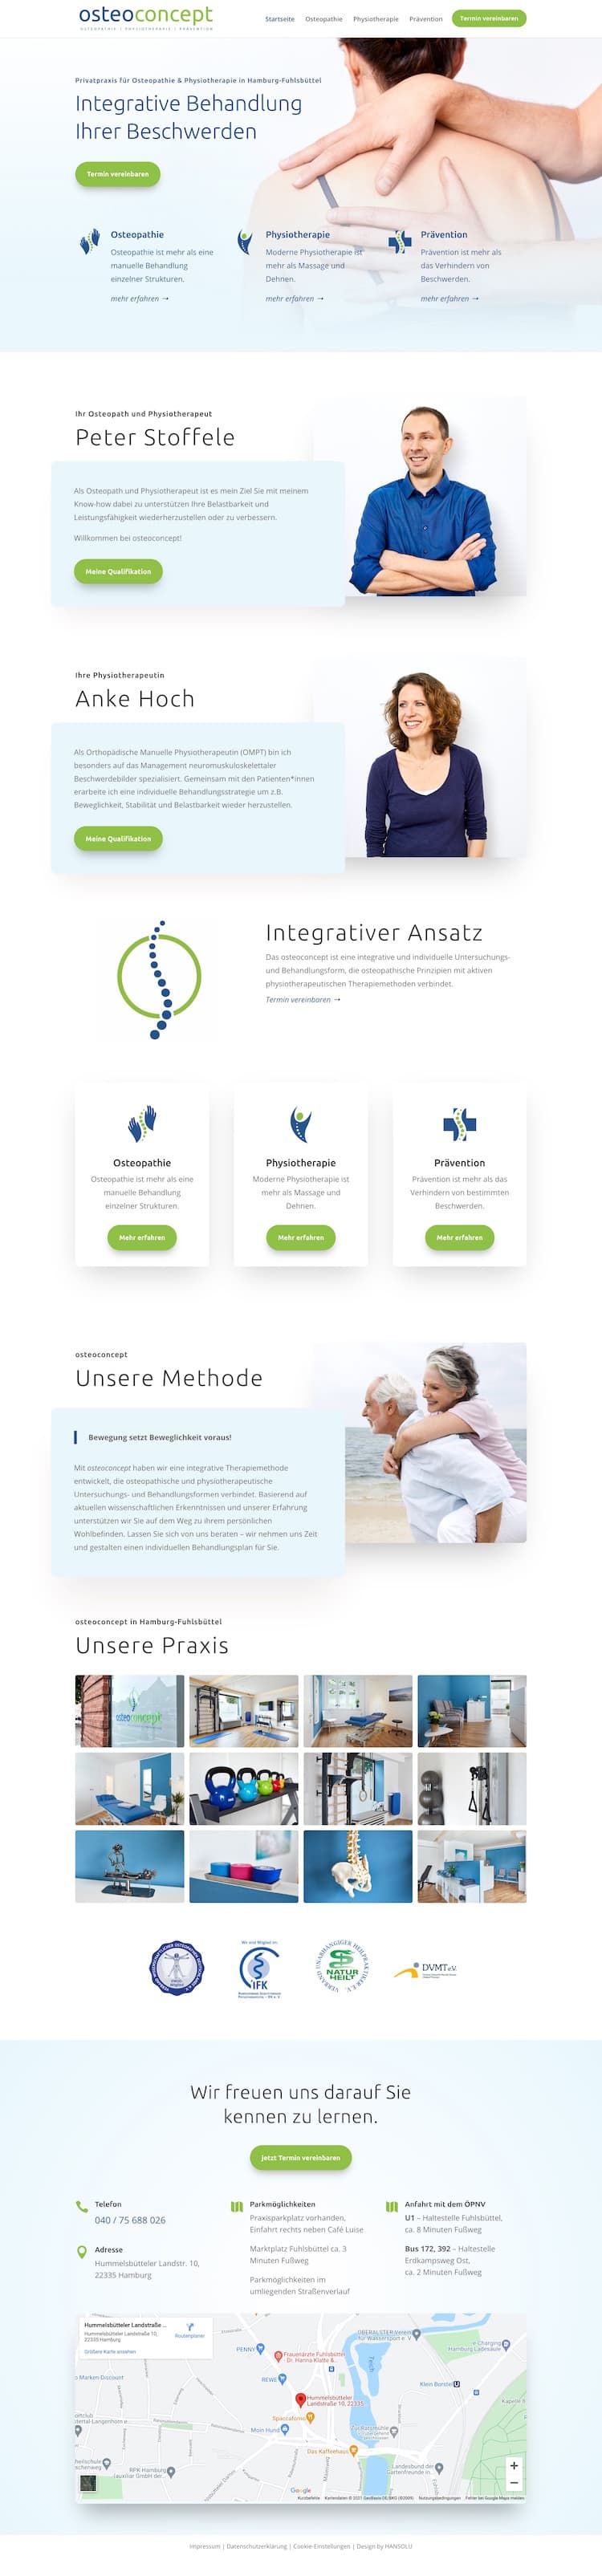 Webdesign für Osteopathie - Screenshot von der Startseite der Praxis Osteoconcept